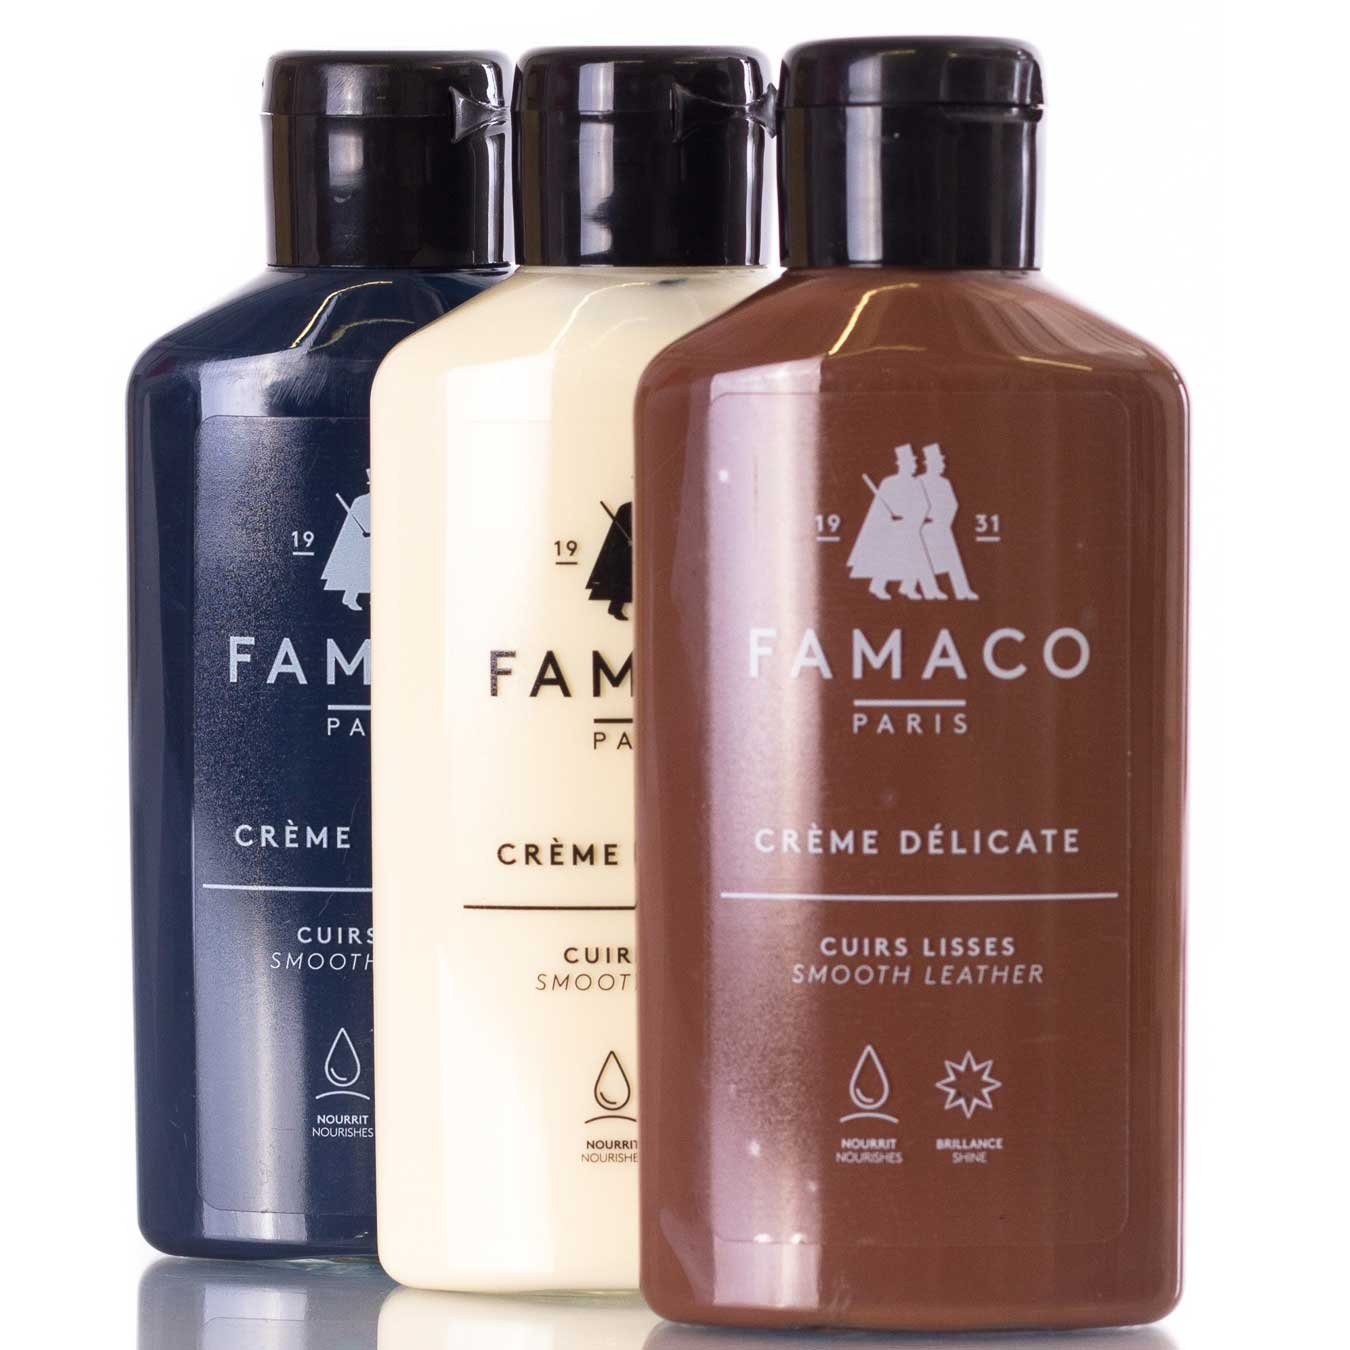 spottbillig verschleudern Famaco Famaco Farblos Lederpflege Delicate Creme